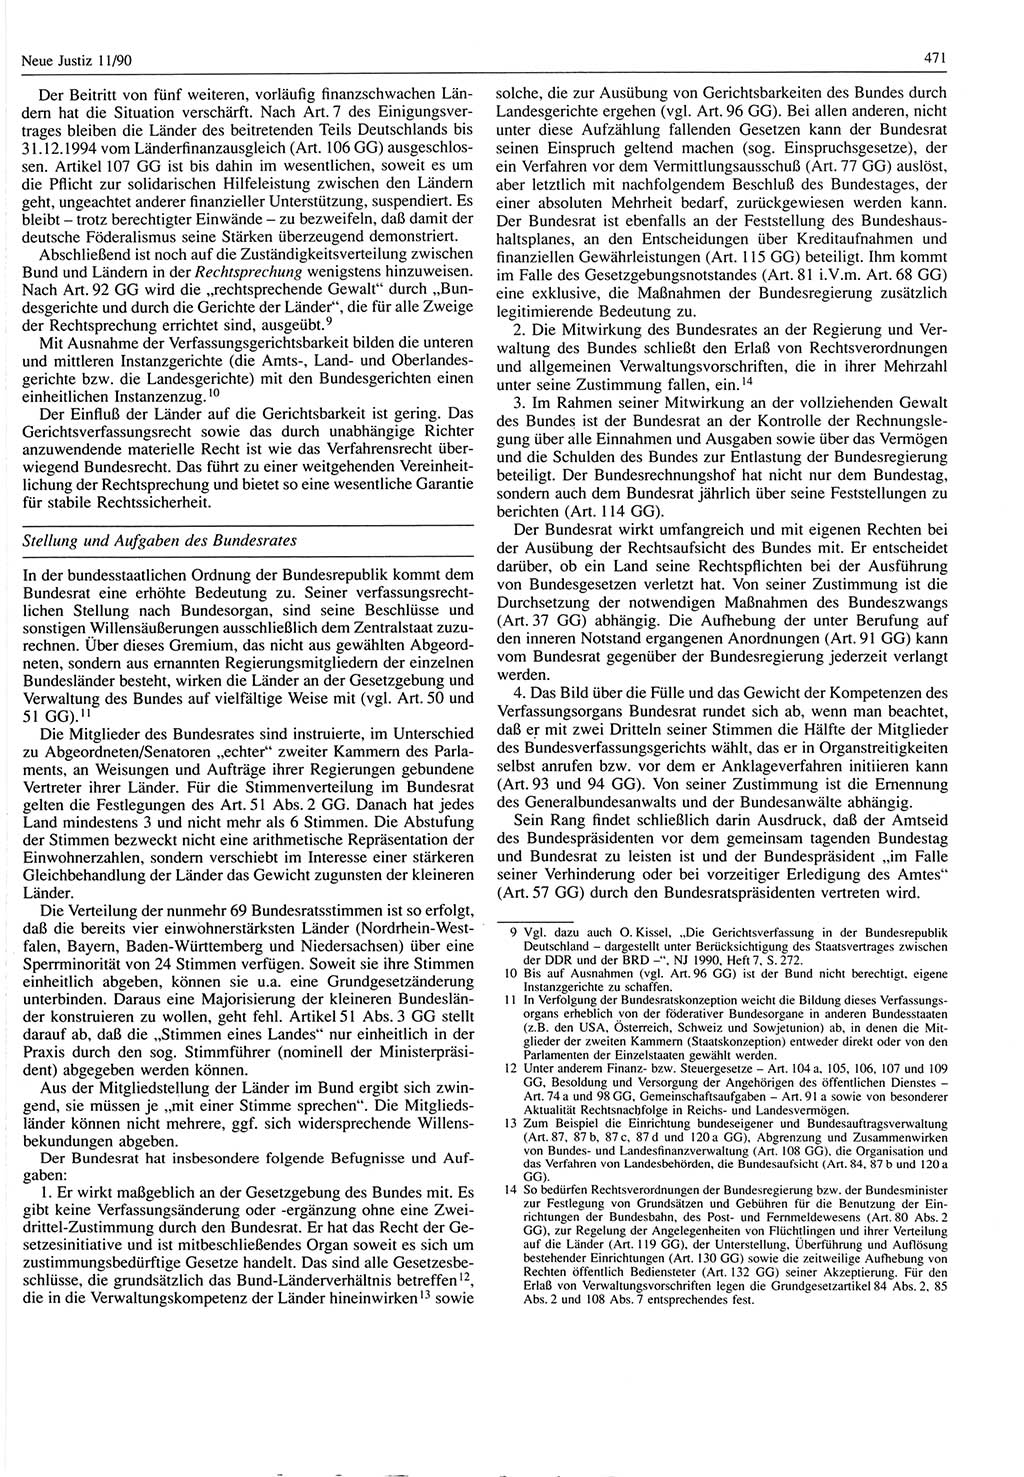 Neue Justiz (NJ), Zeitschrift für Rechtsetzung und Rechtsanwendung [Deutsche Demokratische Republik (DDR)], 44. Jahrgang 1990, Seite 471 (NJ DDR 1990, S. 471)